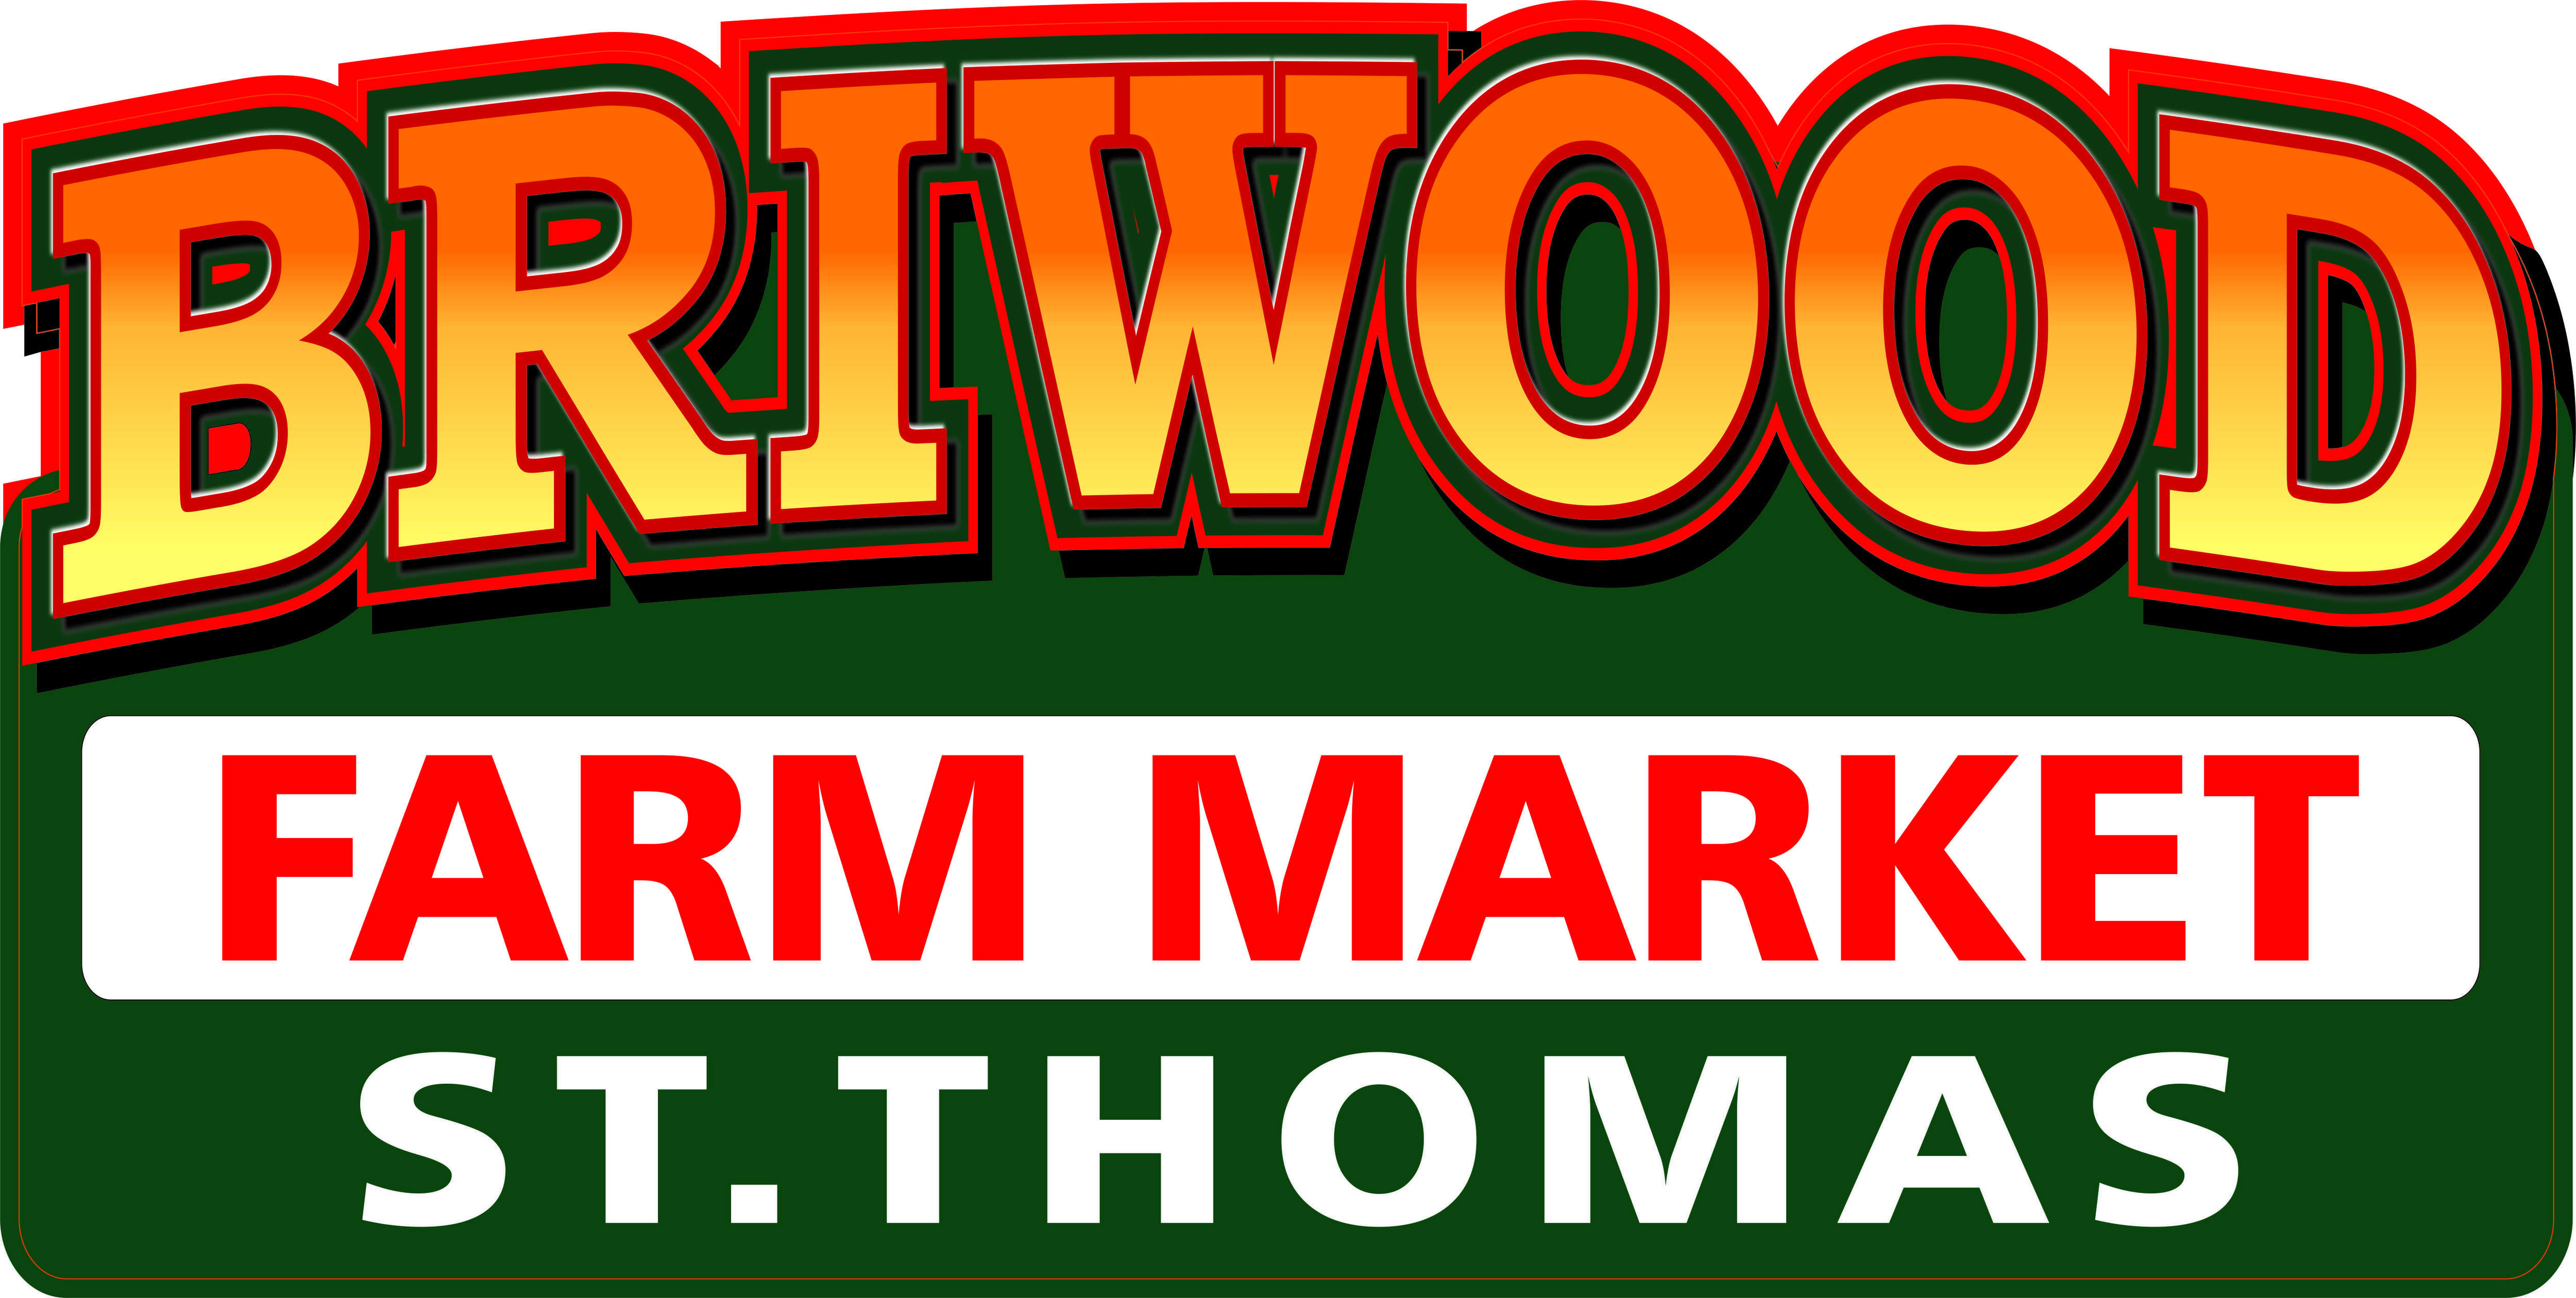 Briwood Farm Market